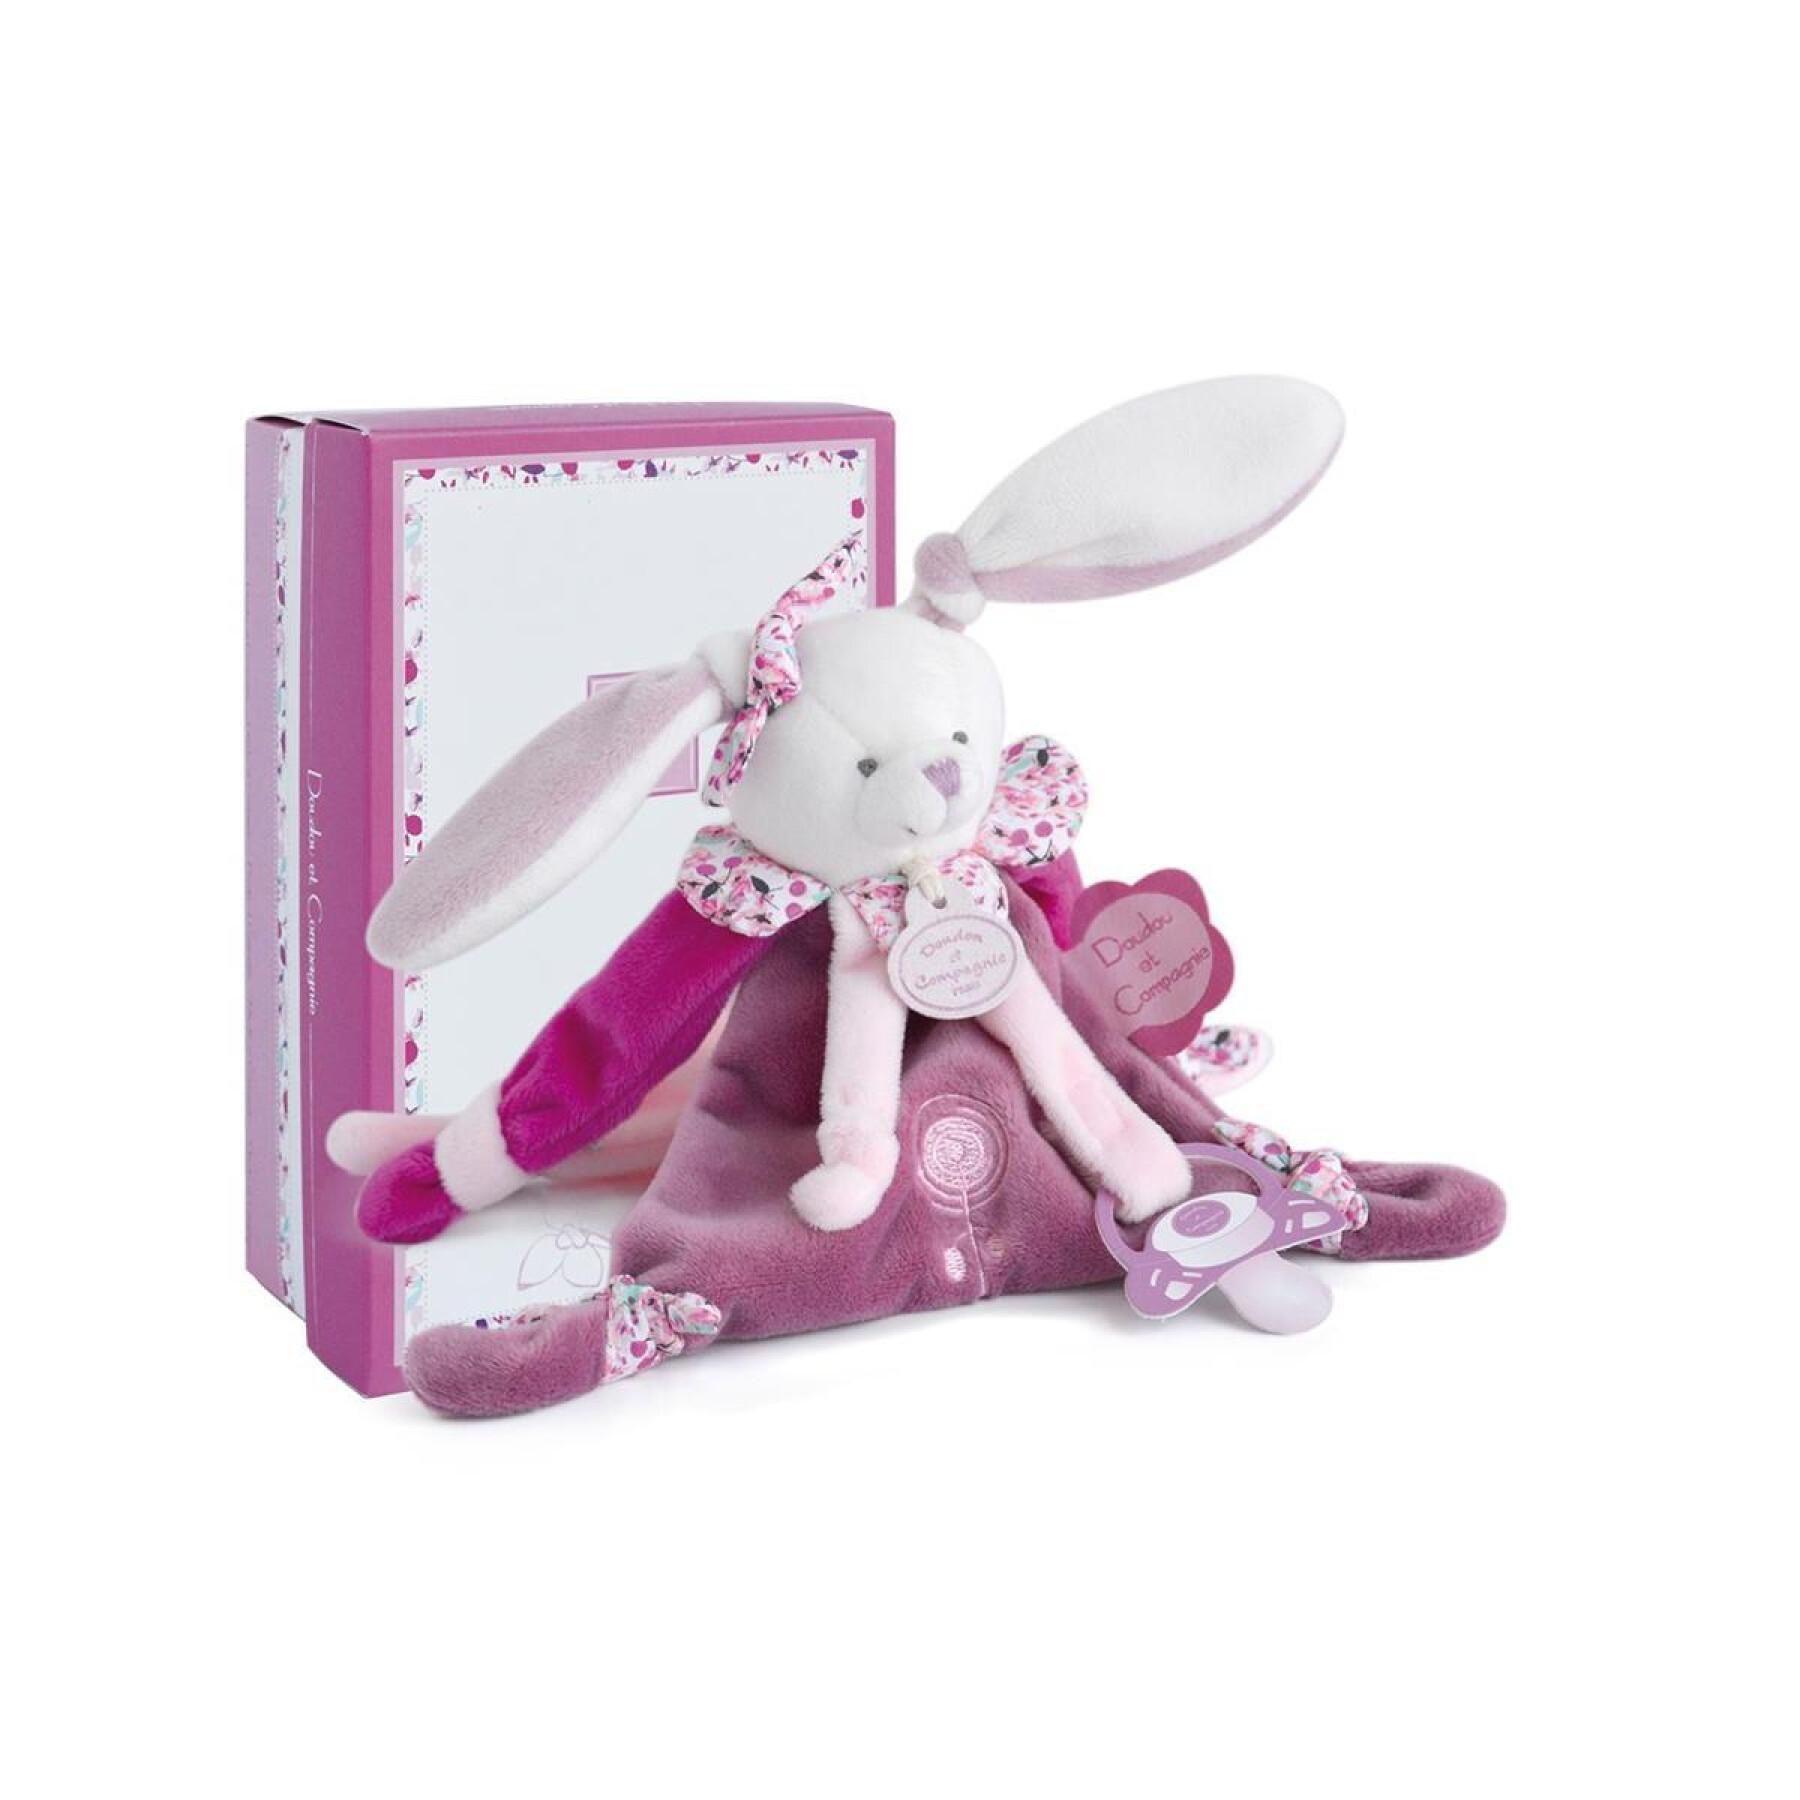 Pluszowy króliczek Cherry z klipsem do smoczka Doudou & compagnie